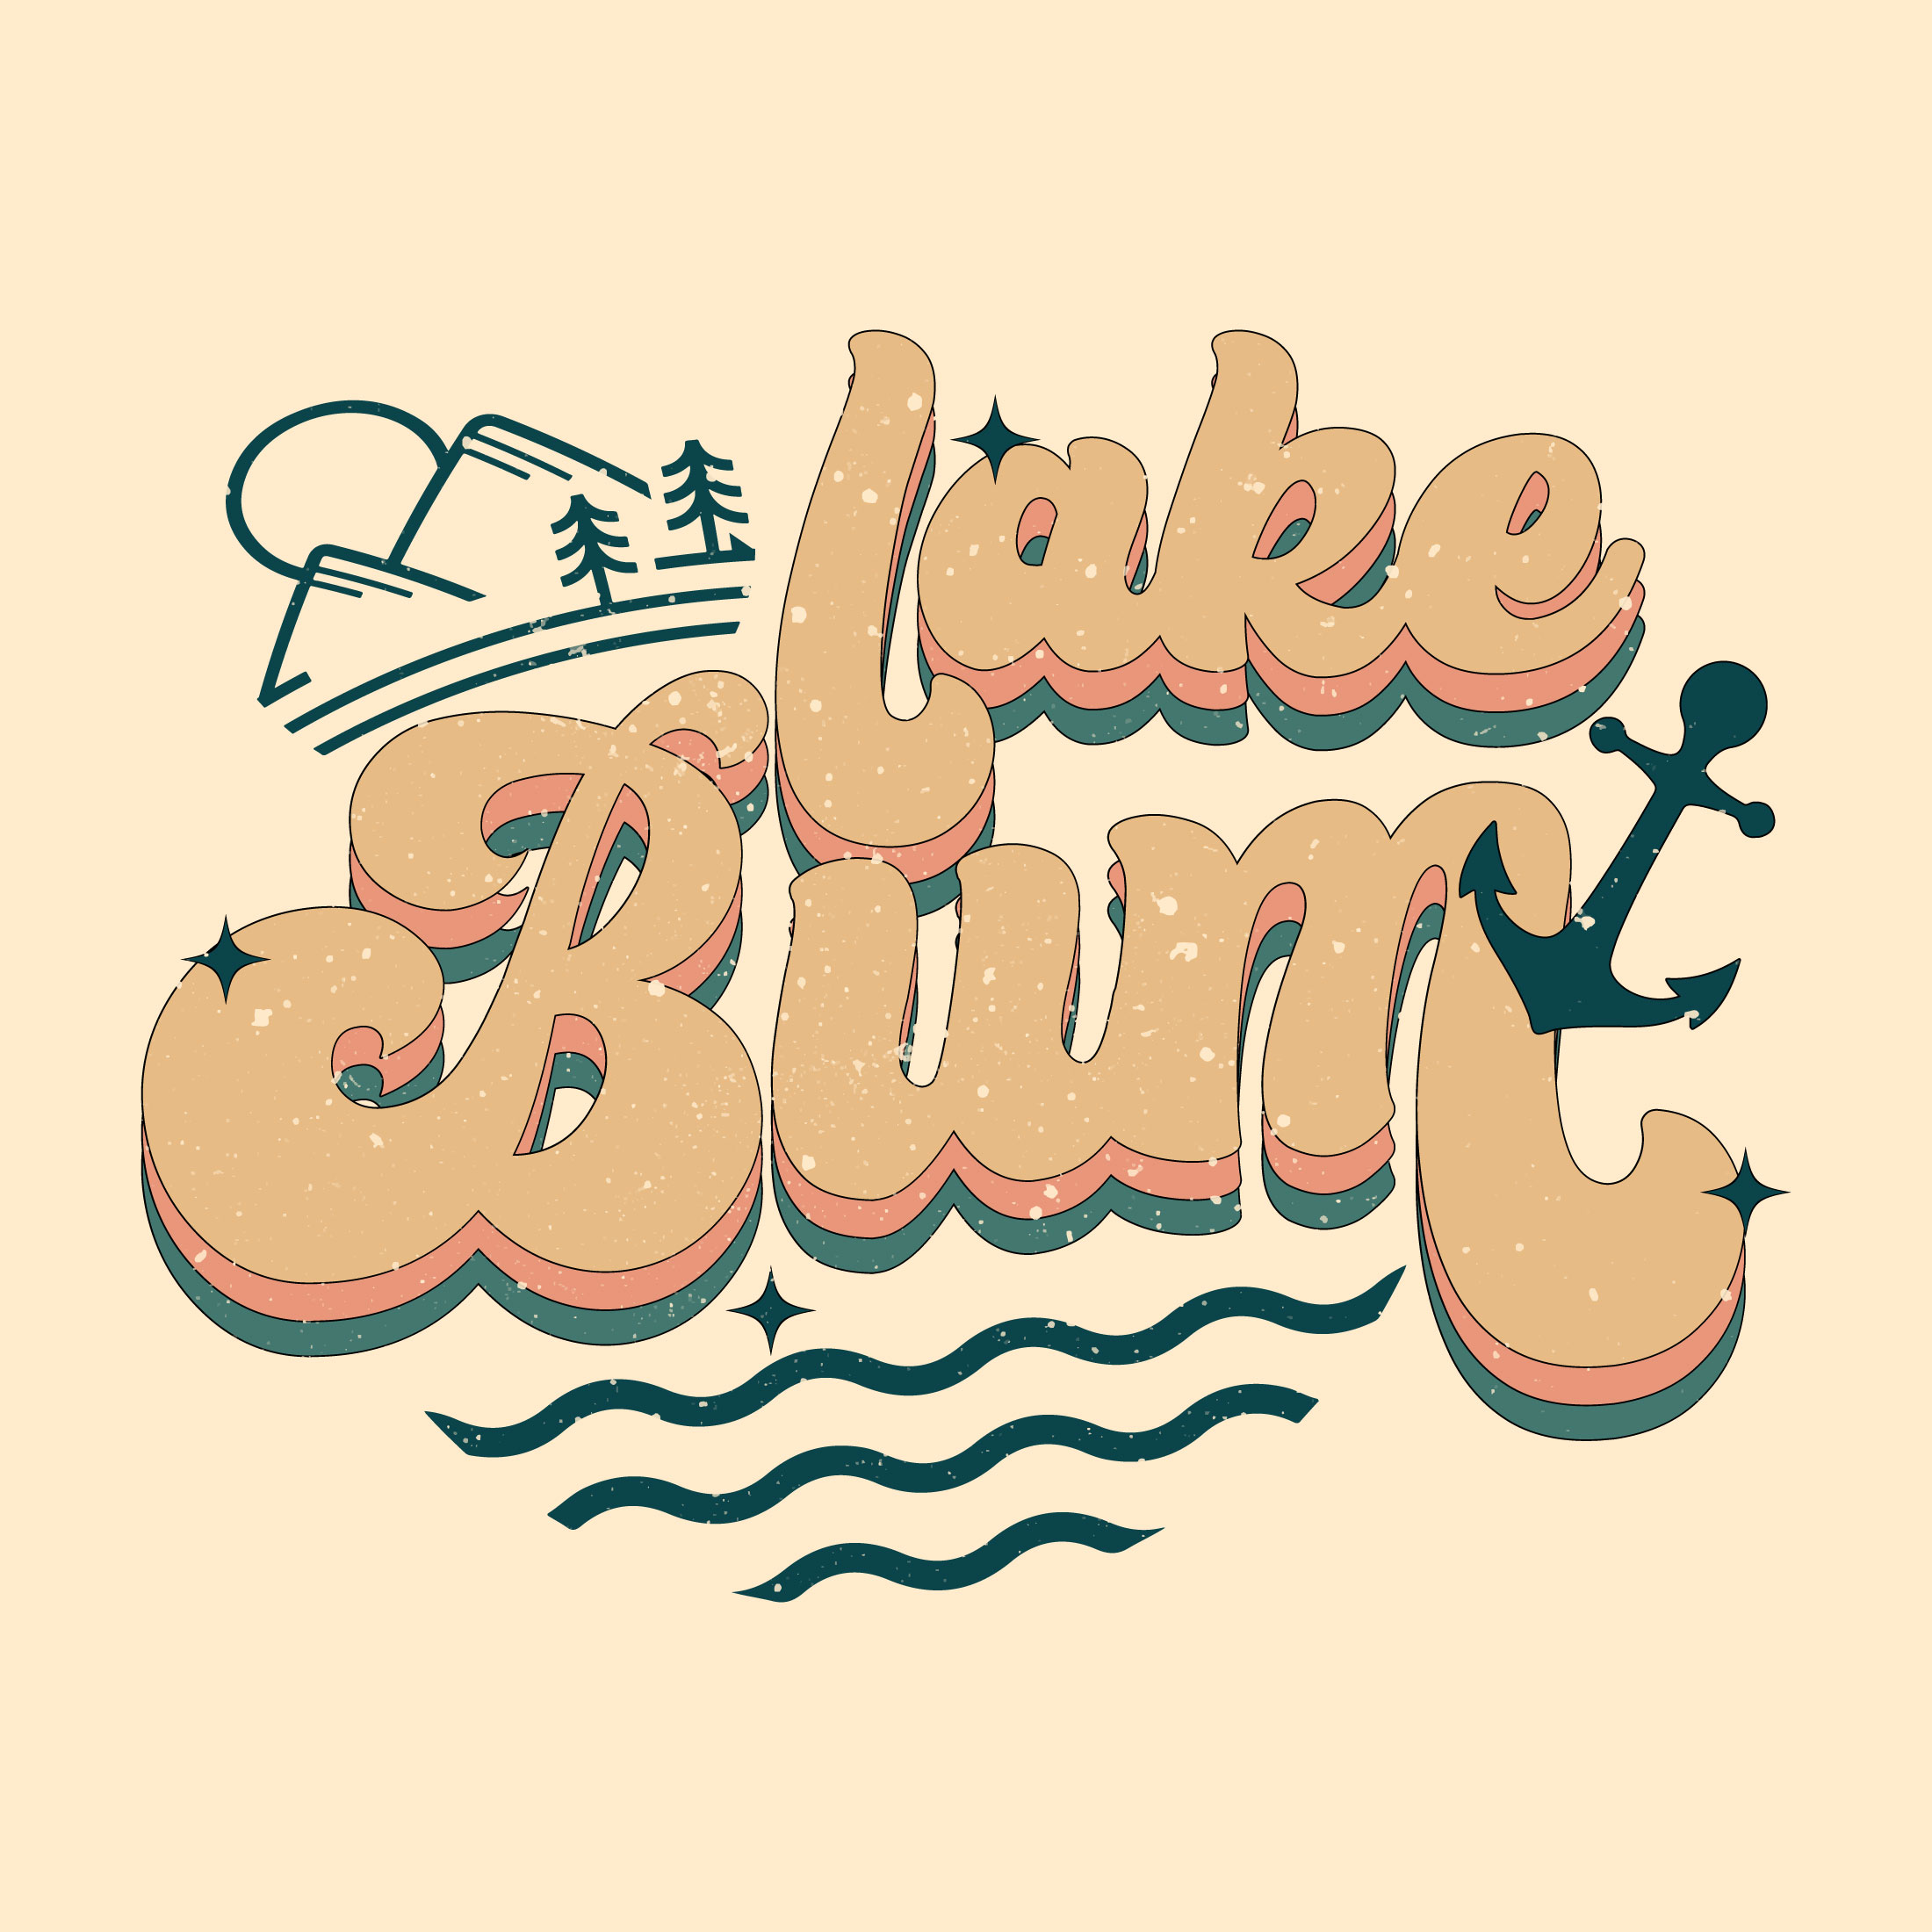 lake bum 276